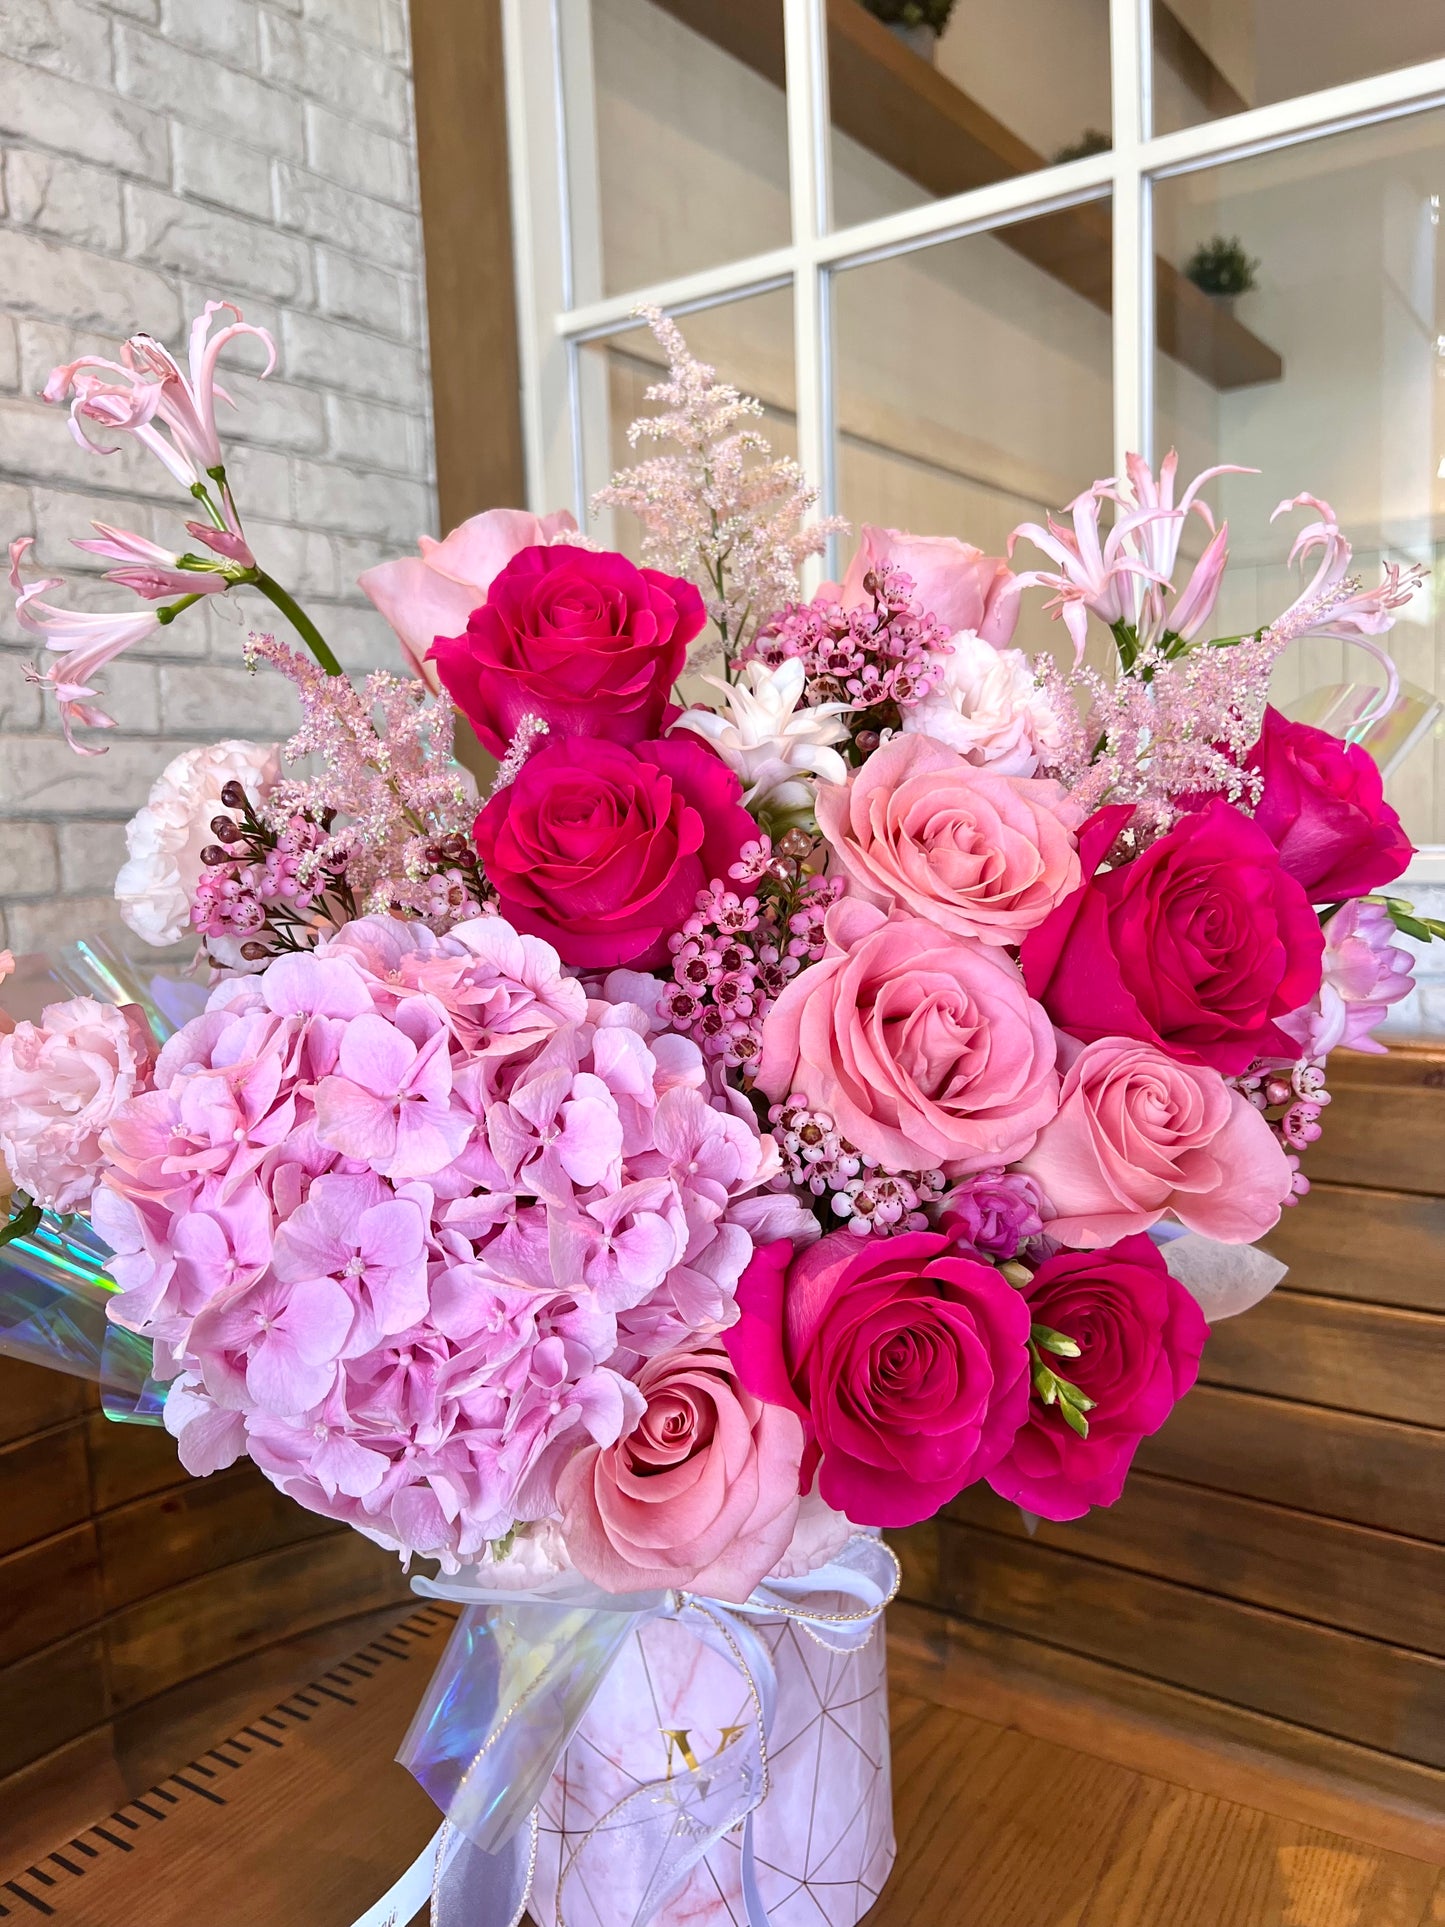 芭比 - 粉紅玫瑰繡球花束